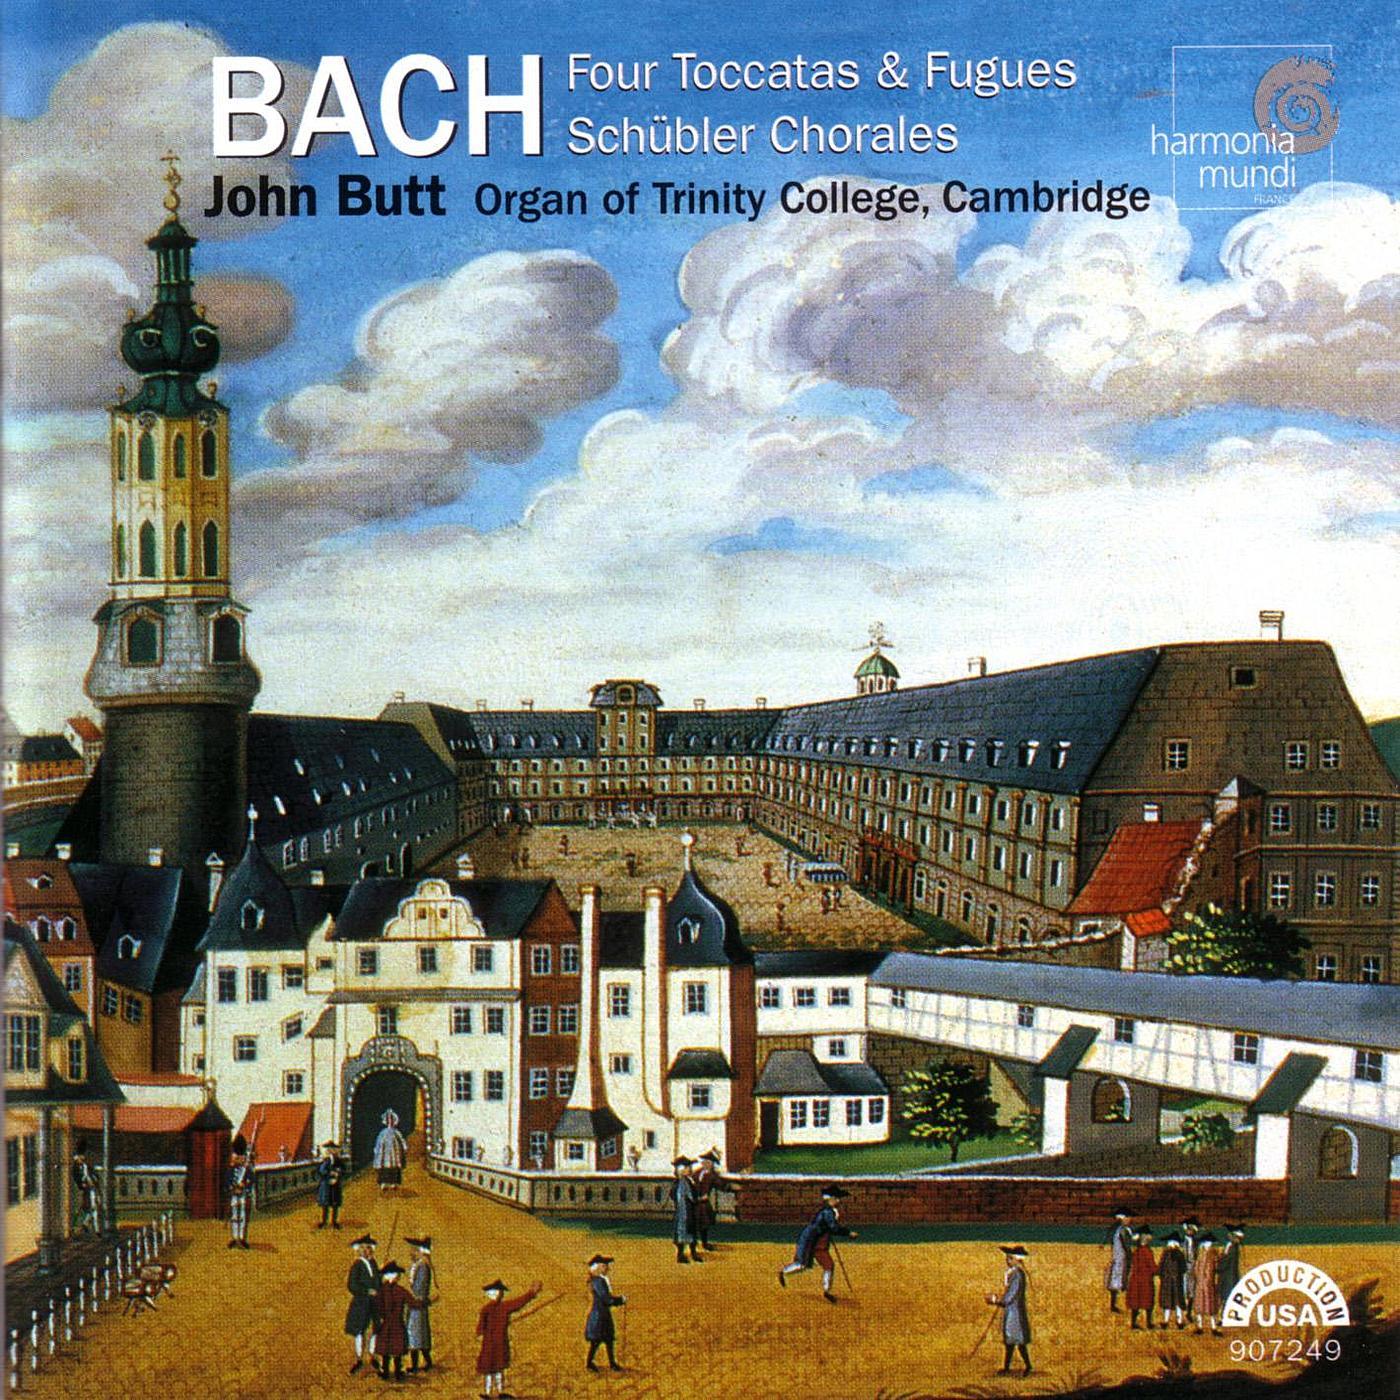 Toccata And Fugue In D Minor, "Dorian" (BWV 538): Fugue